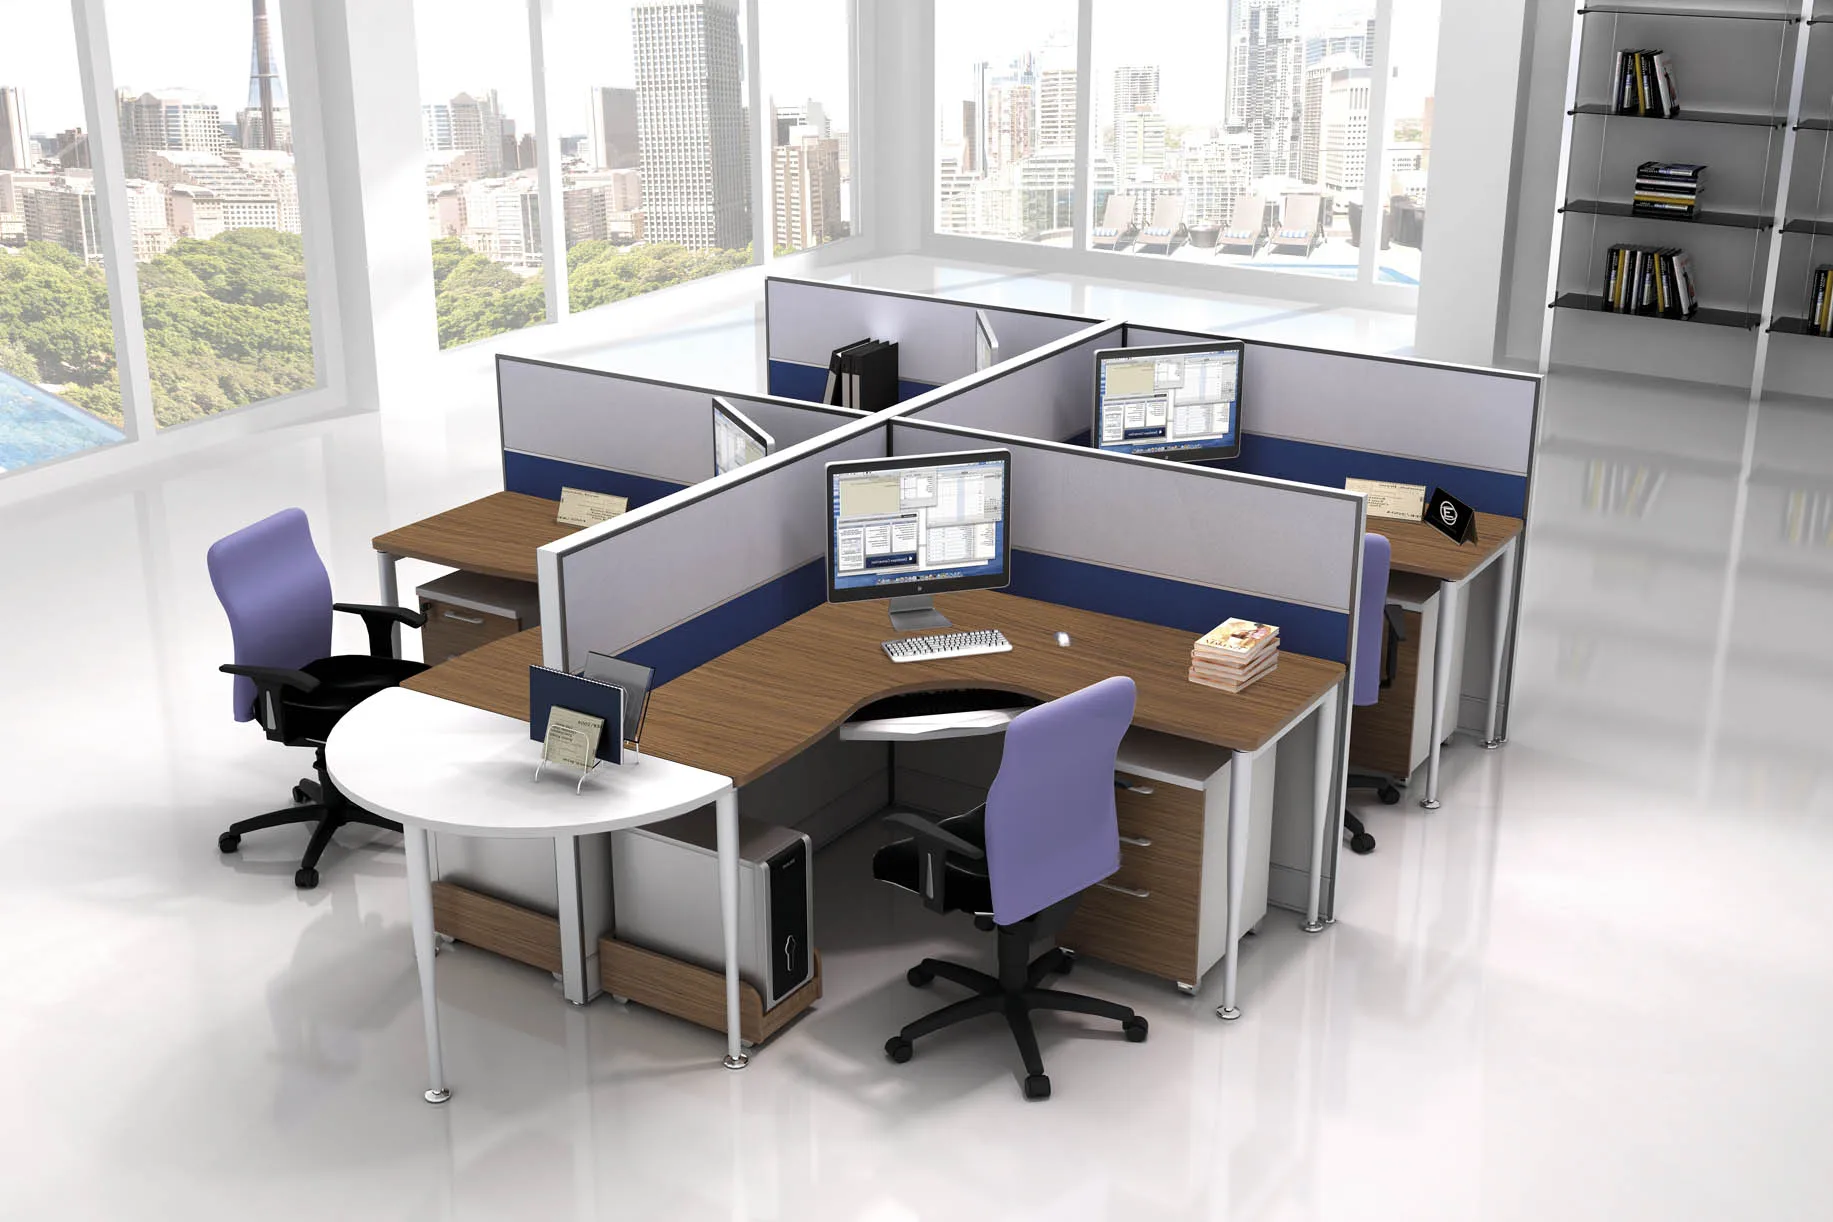 Офисные столы с перегородками для четырех сотрудников